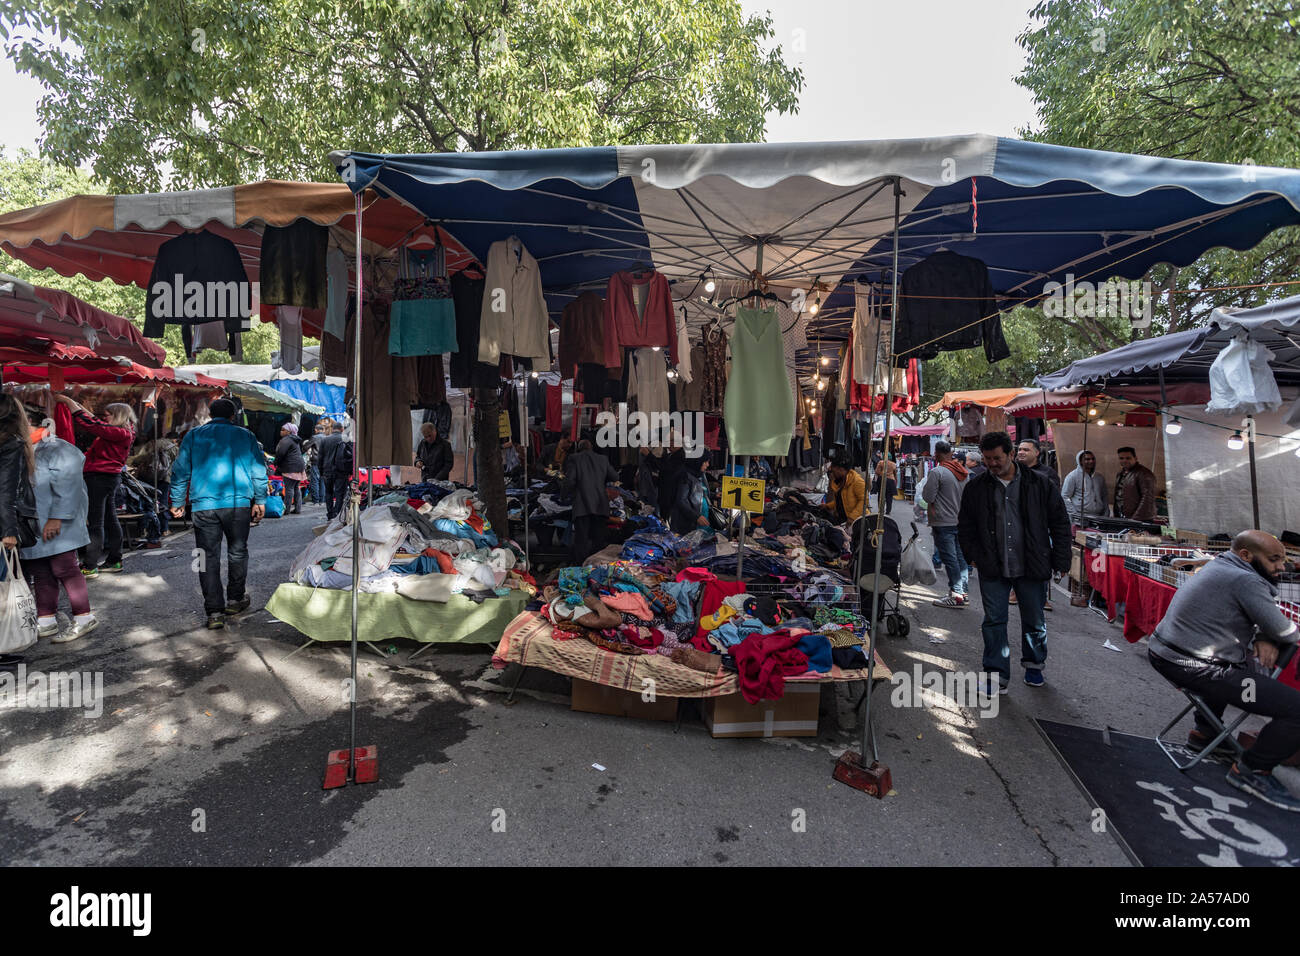 Parigi, Francia - 30 settembre, 2019: People shopping per bargins a Montreuil mercatino delle pulci. Uno dei più antichi mercatini delle pulci nella capitale. È Foto Stock